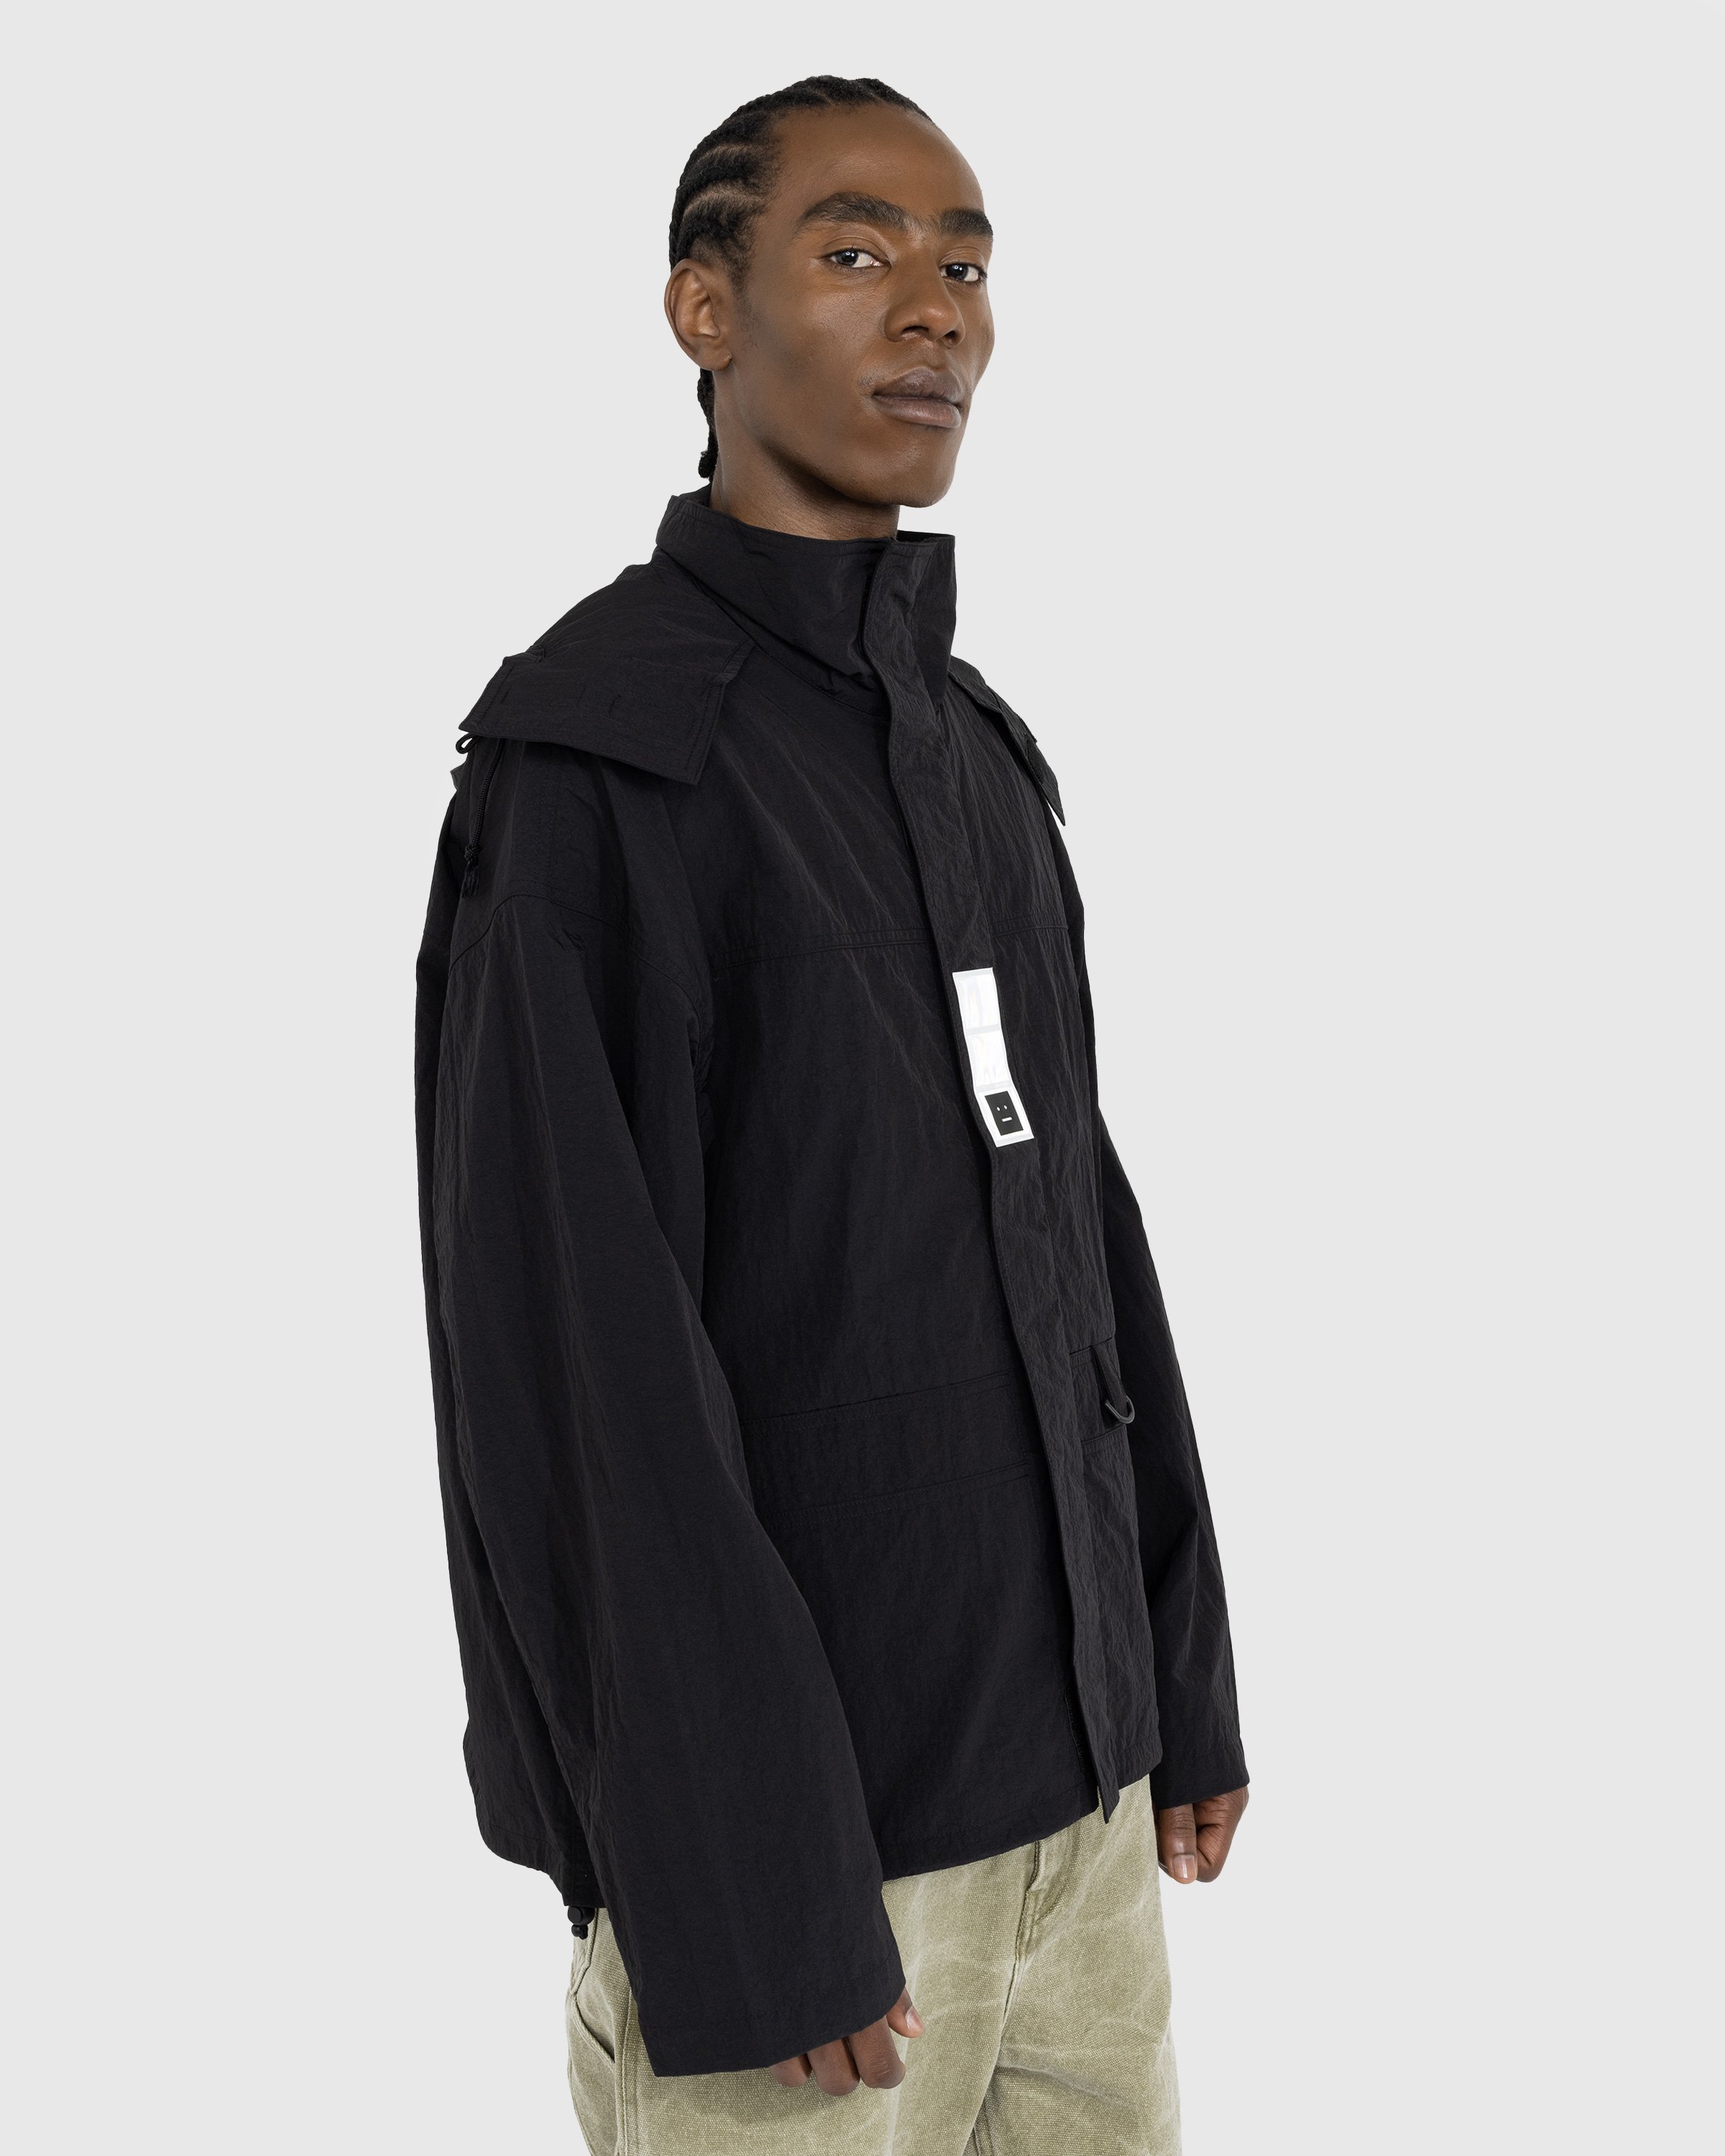 Acne Studios – Nylon Hooded Jacket Black | Highsnobiety Shop